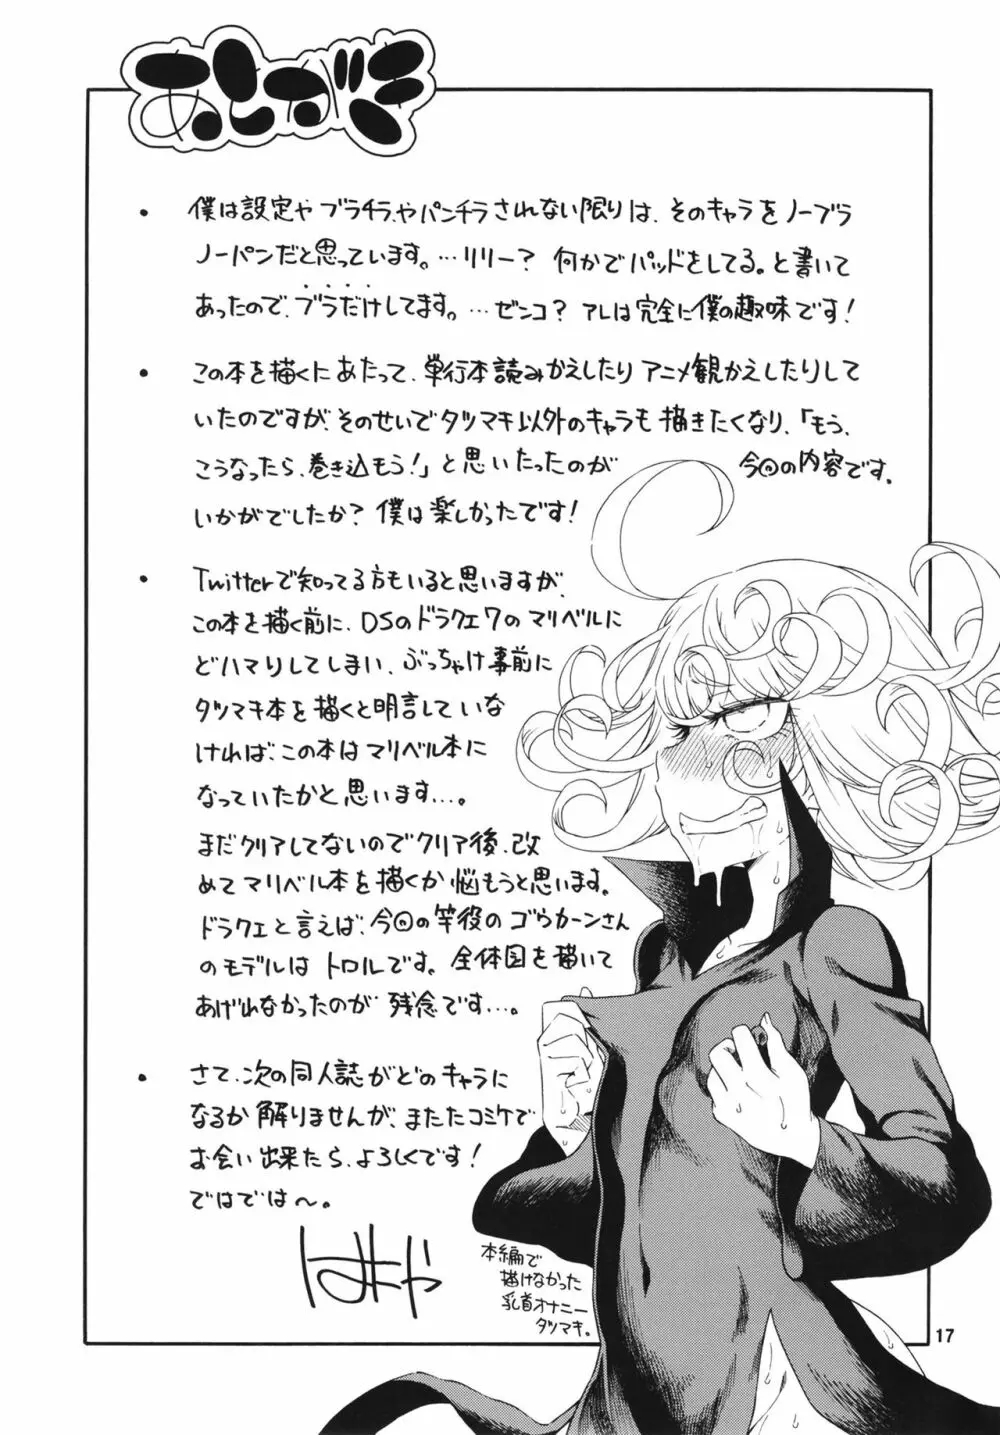 災害レベル:タツマキ - page17